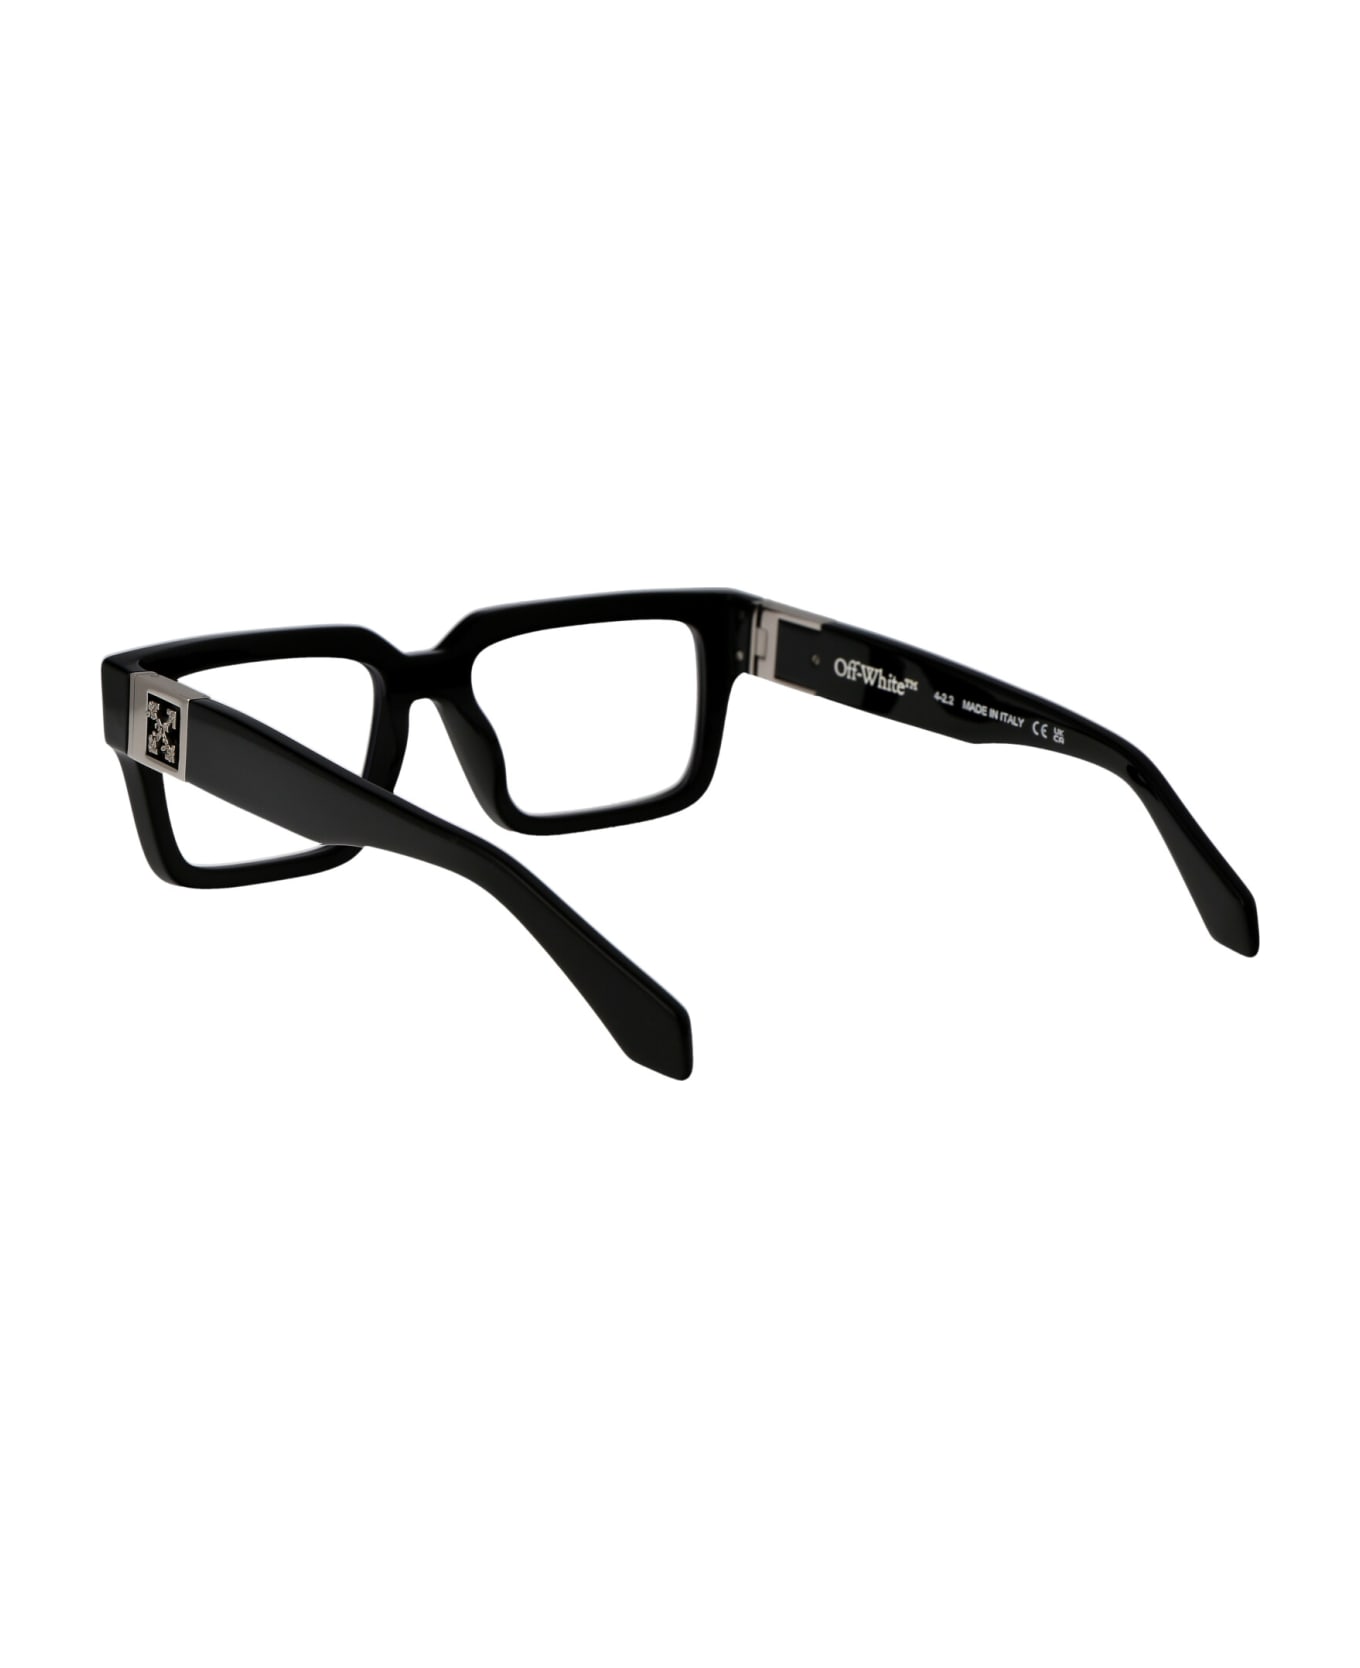 Off-White Optical Style 15 Glasses - 1000 BLACK アイウェア